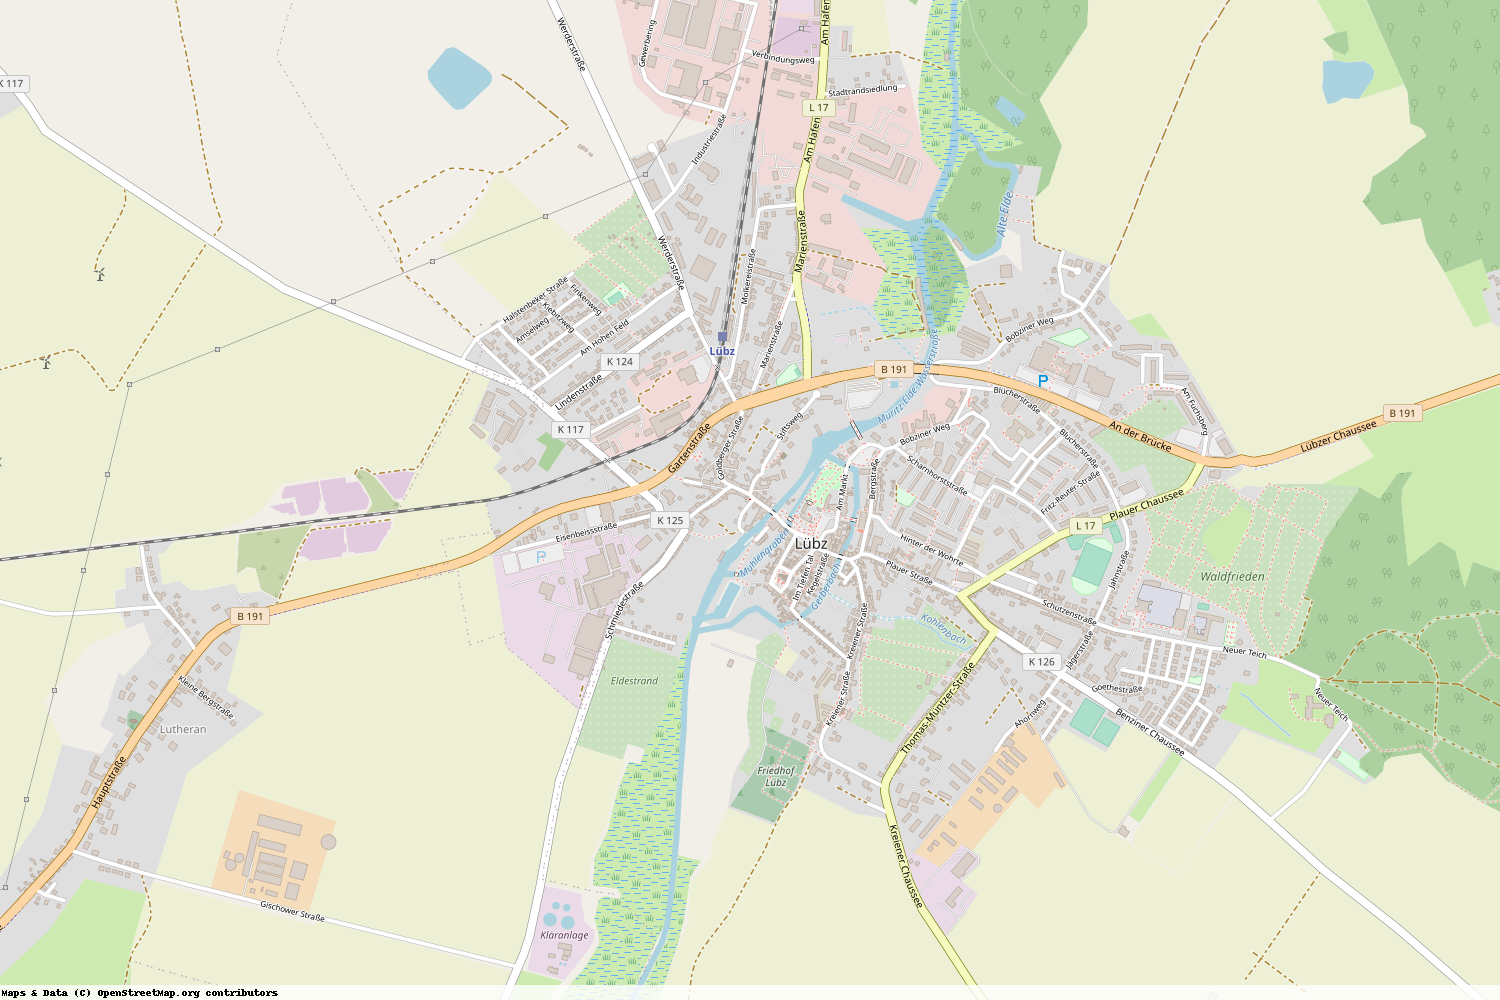 Ist gerade Stromausfall in Mecklenburg-Vorpommern - Ludwigslust-Parchim - Lübz?